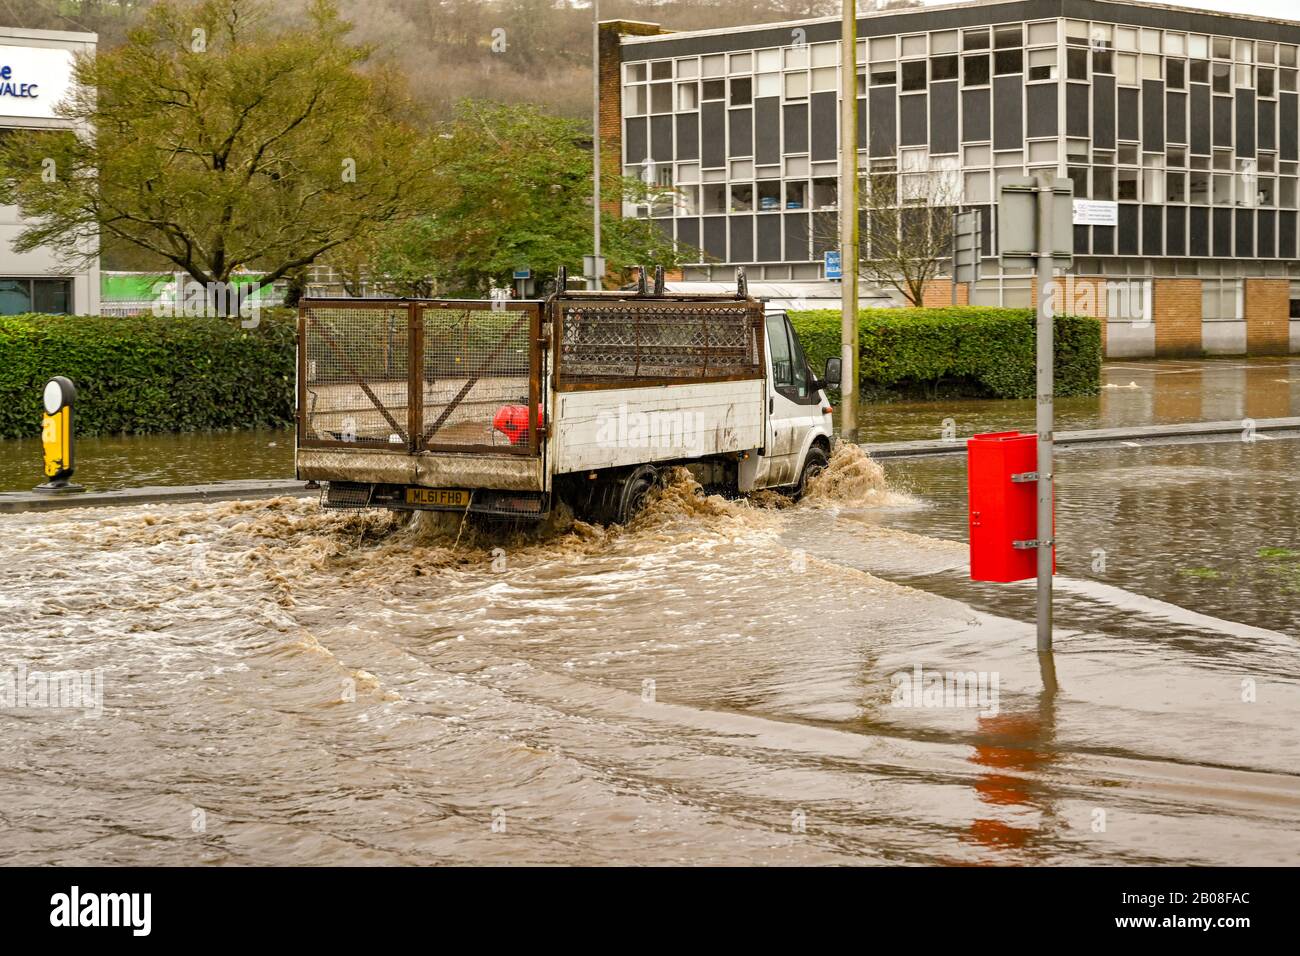 NANTGARW, PRÈS DE CARDIFF, PAYS DE GALLES - FÉVRIER 2020: Camion traversant des eaux d'inondation sur Treforest Industrial Estate près de Cardiff Banque D'Images